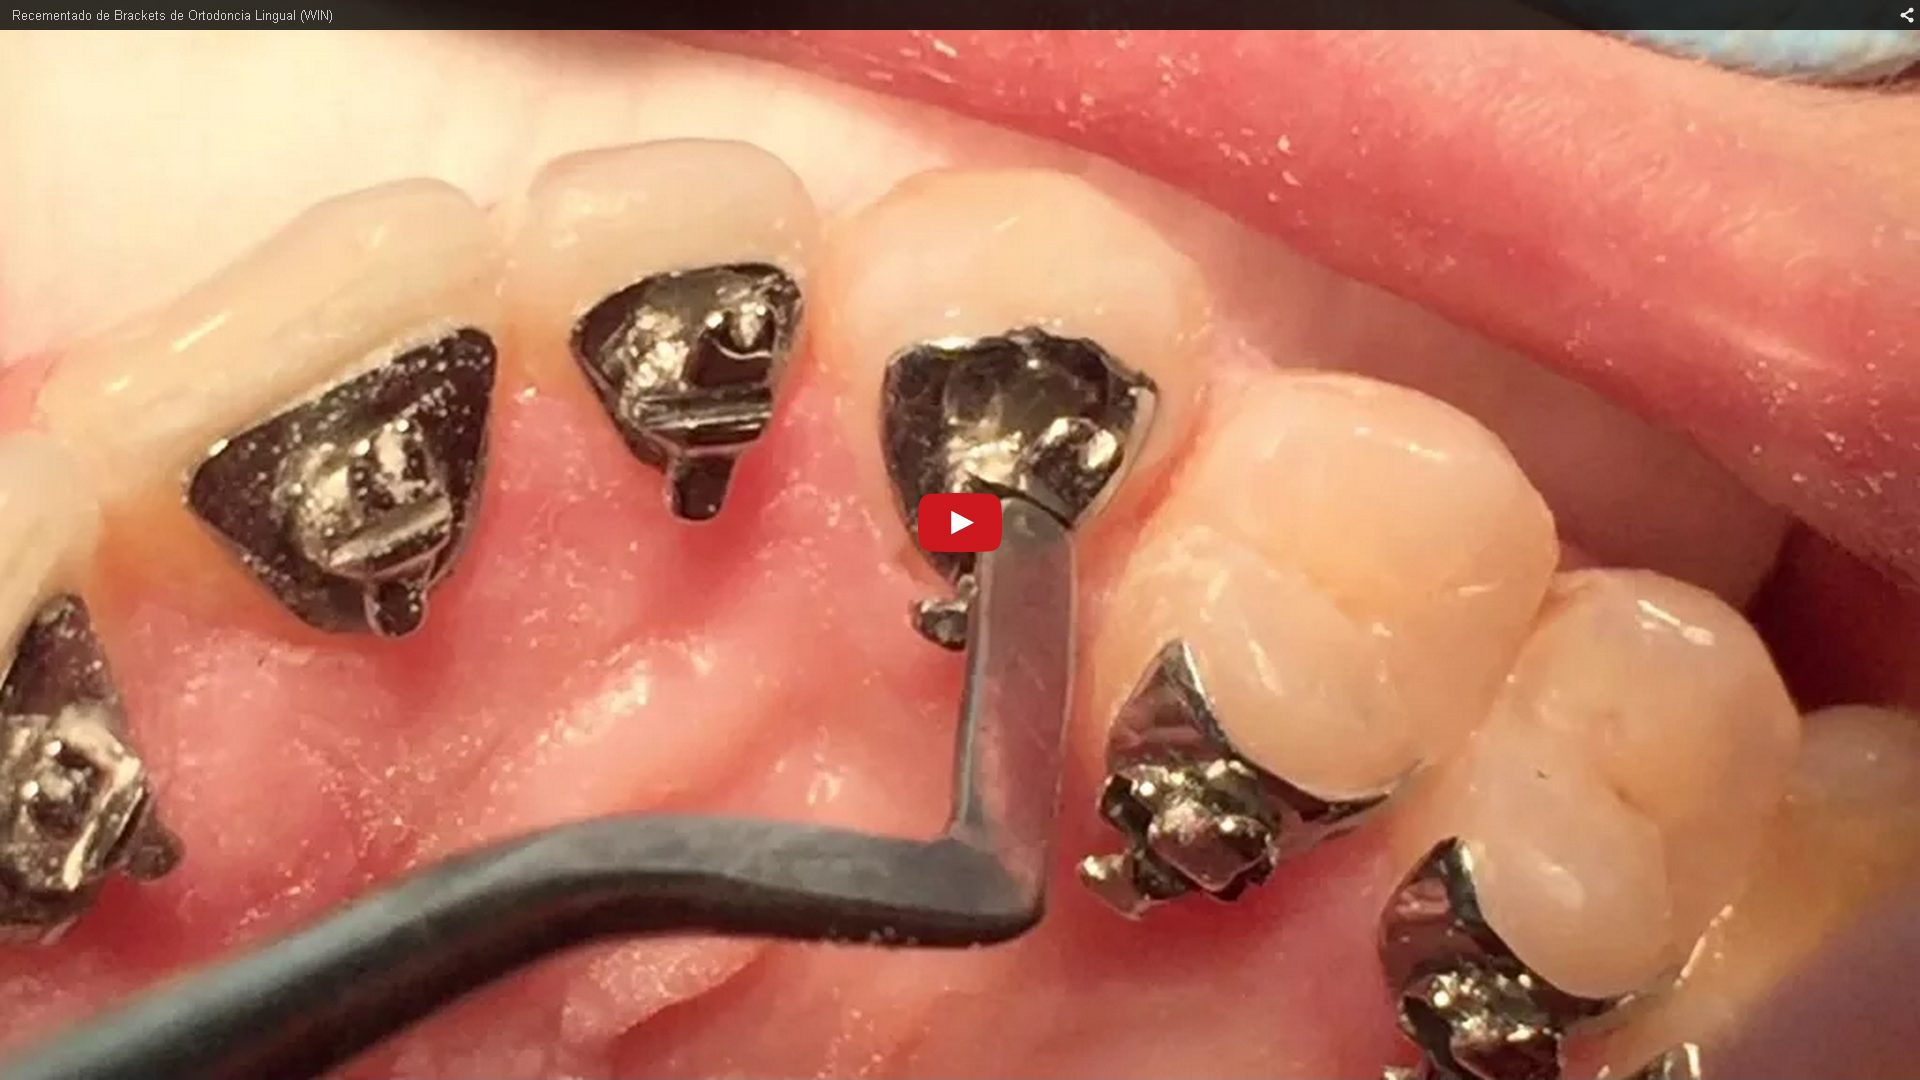 Recementado de brackets linguales | Clínica Dental Ortoperio